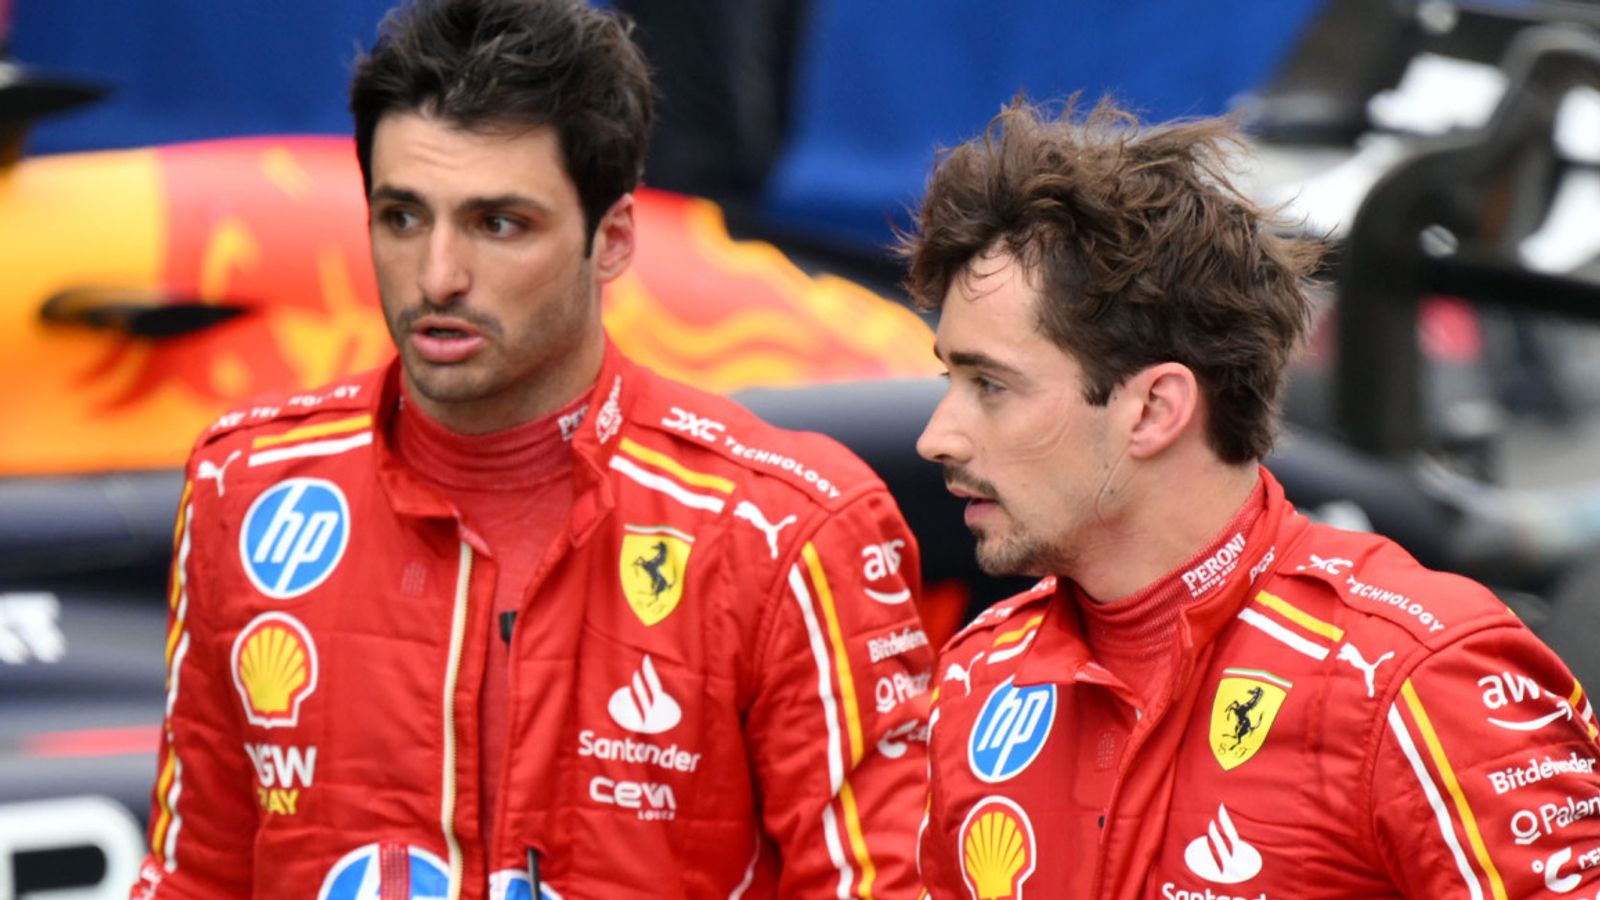 Gran Premio de España: Carlos Sainz y Charles Leclerc de Ferrari en desacuerdo después de una colisión temprana en Barcelona |  Noticias F1